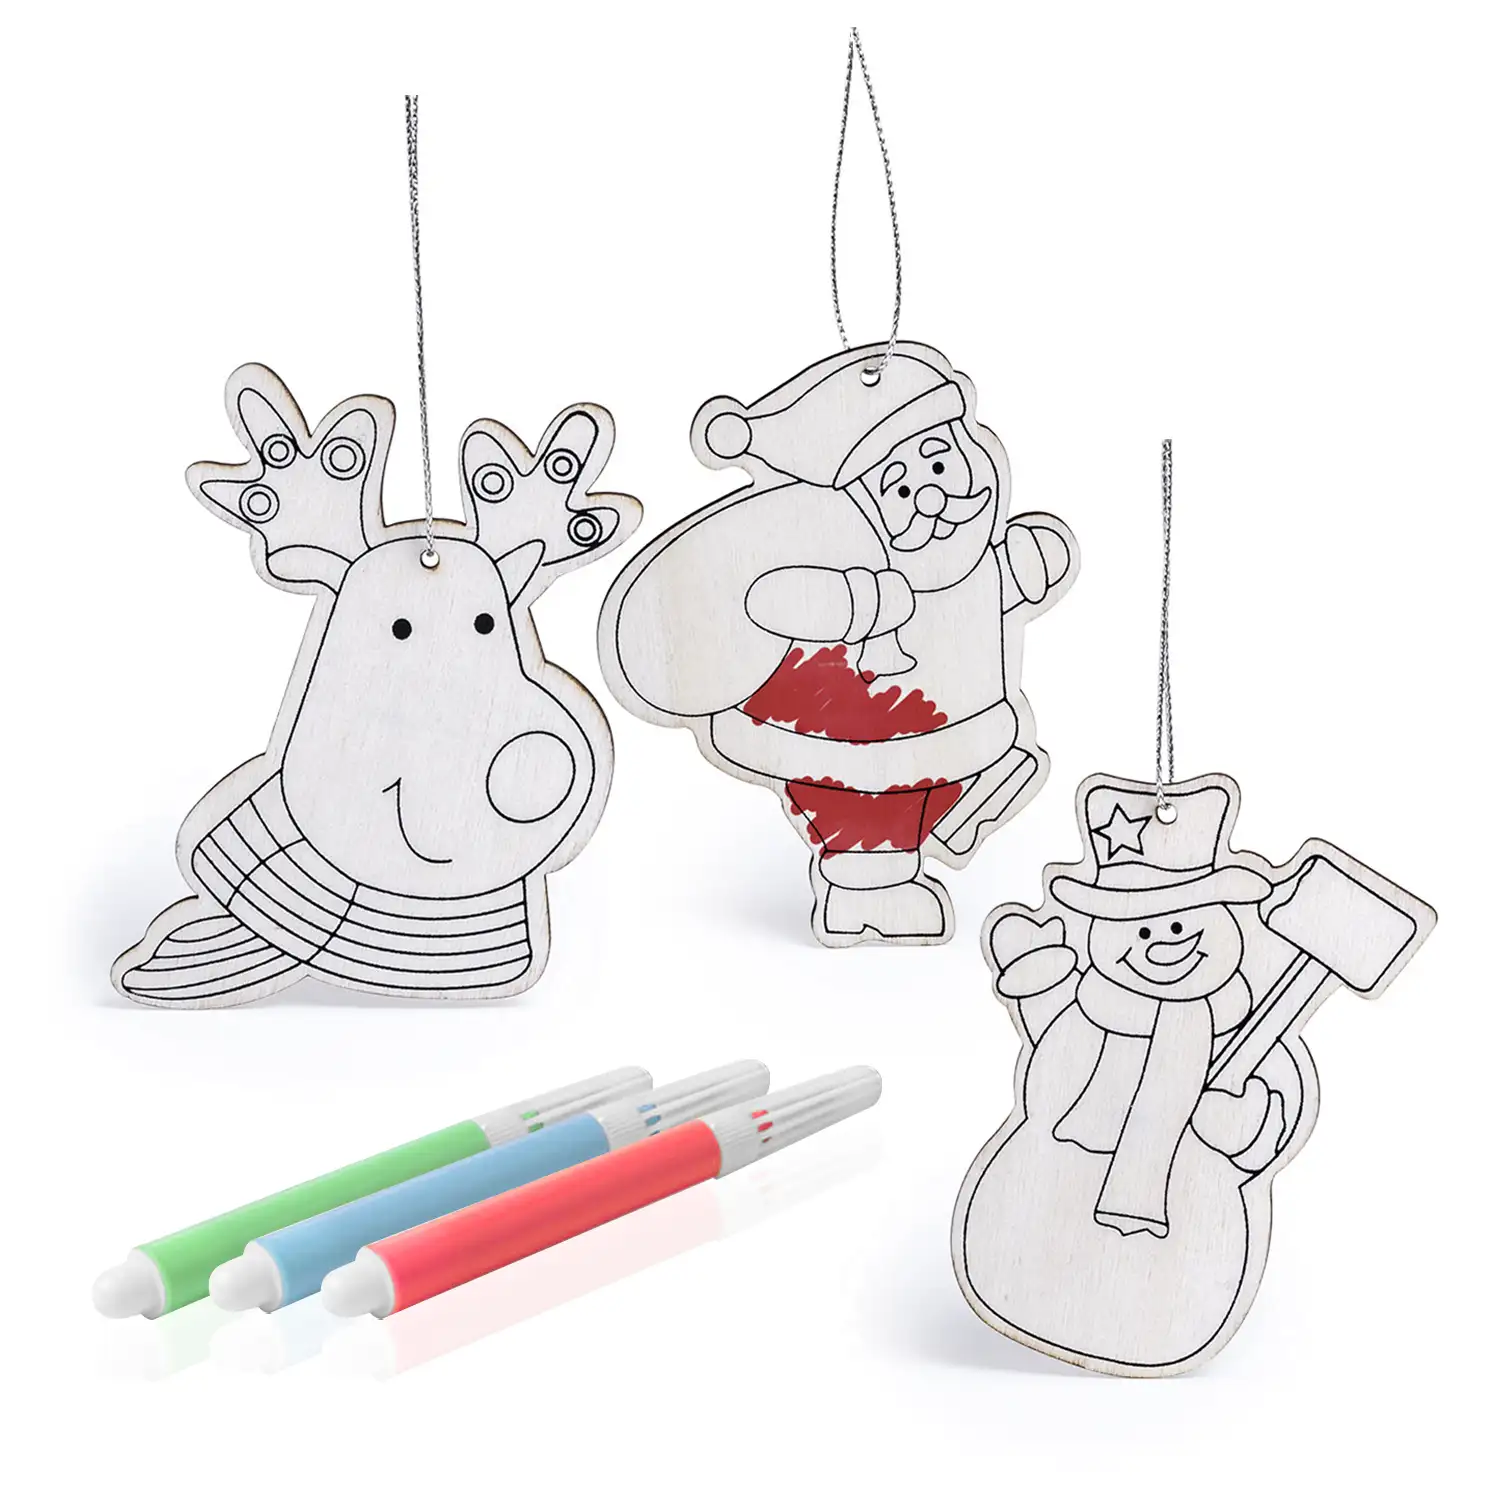 BANCAX Set de 3 figuras navideñas en madera para colorear y colgar. Incluye Papá Noel, muñeco de nieve y reno. Con 3 rotuladores.